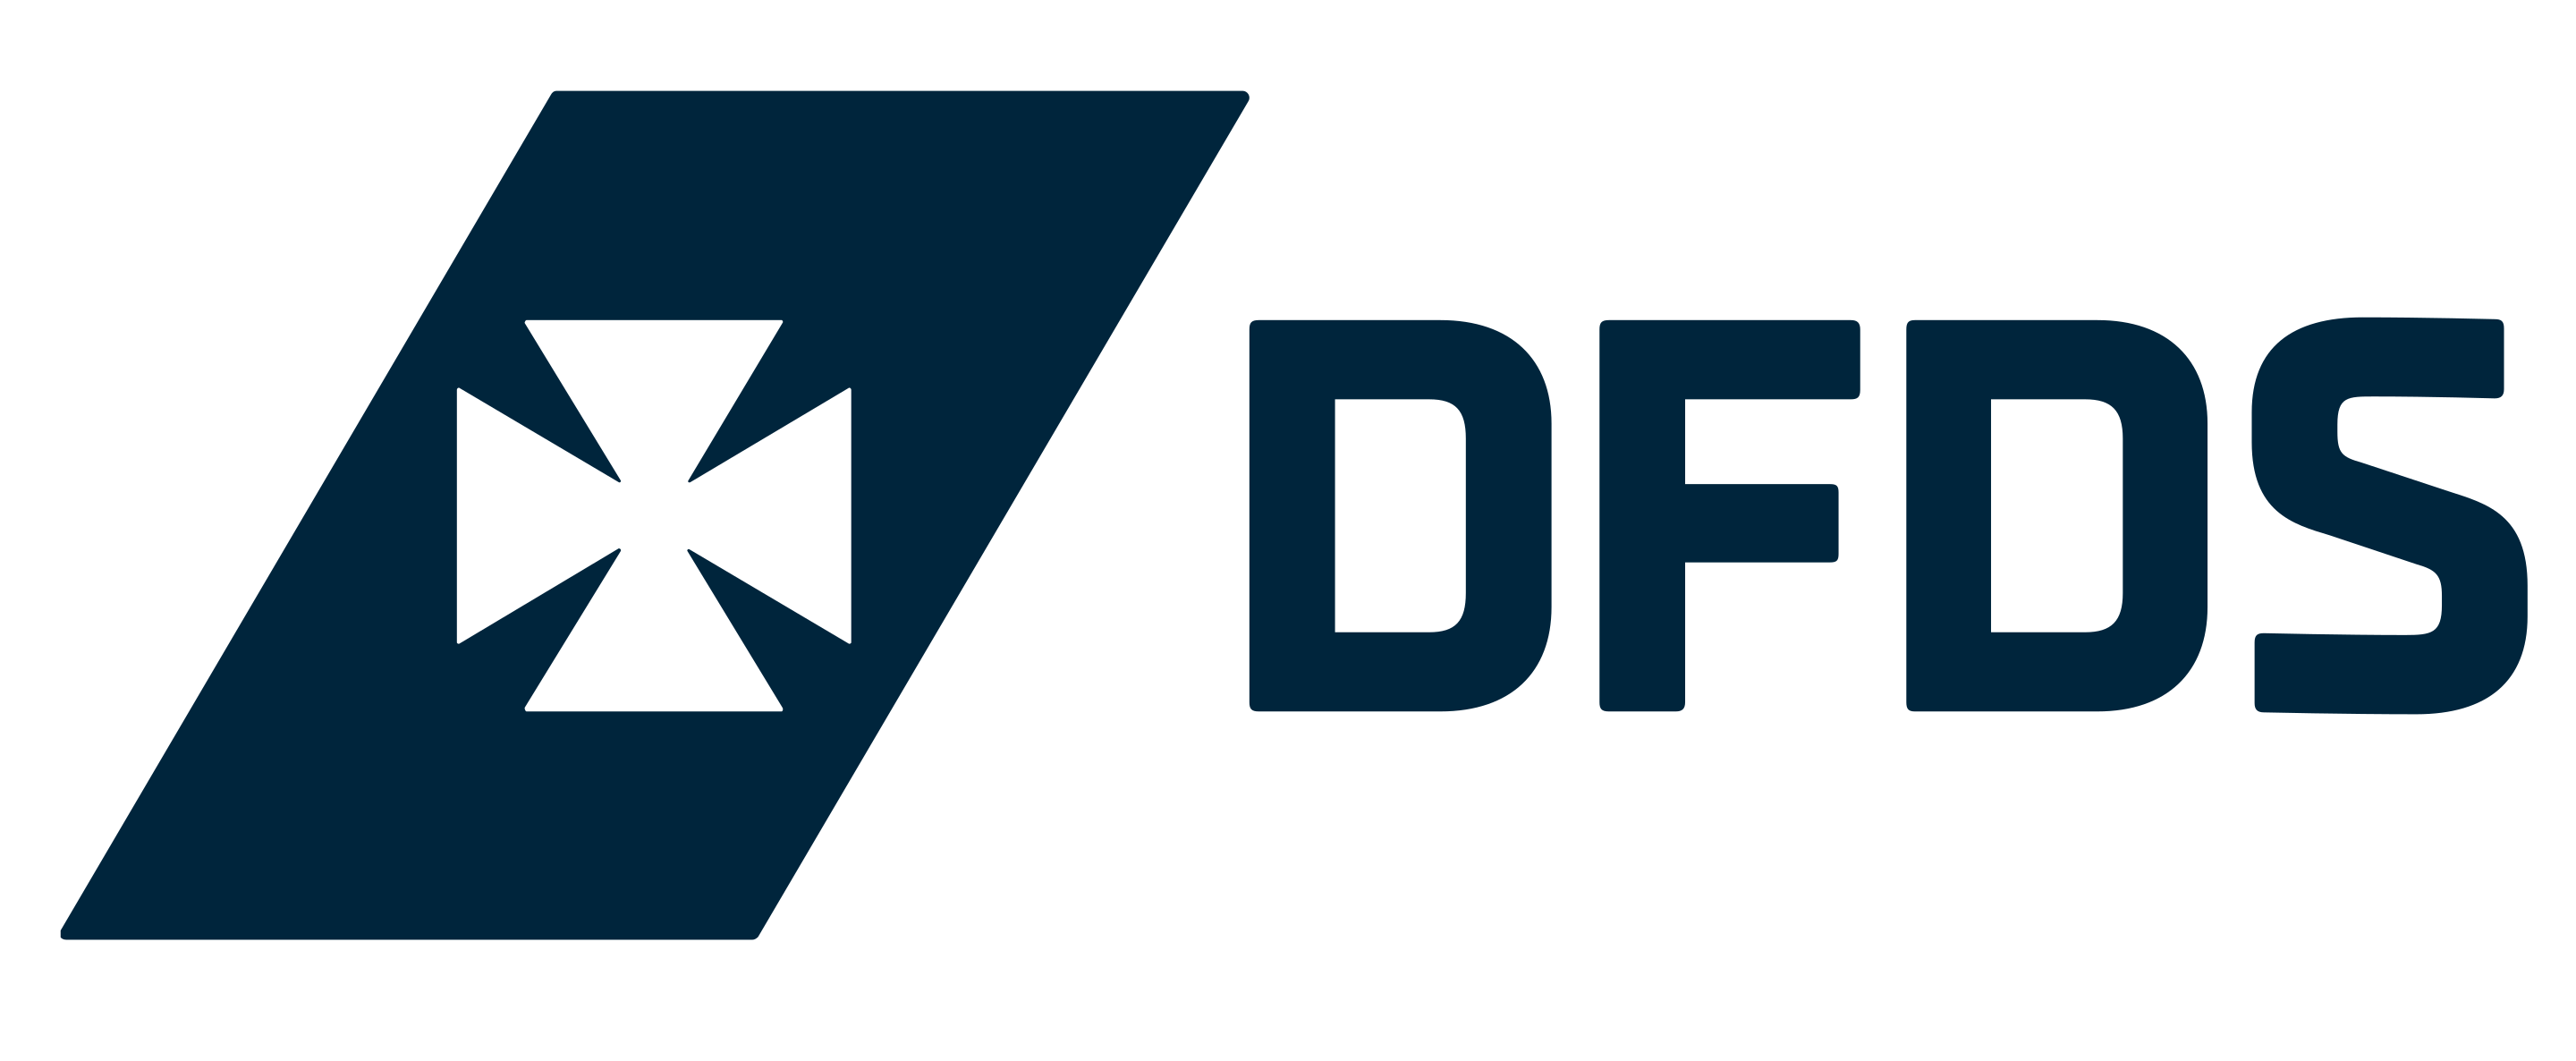 Логотип DFDS Seaways